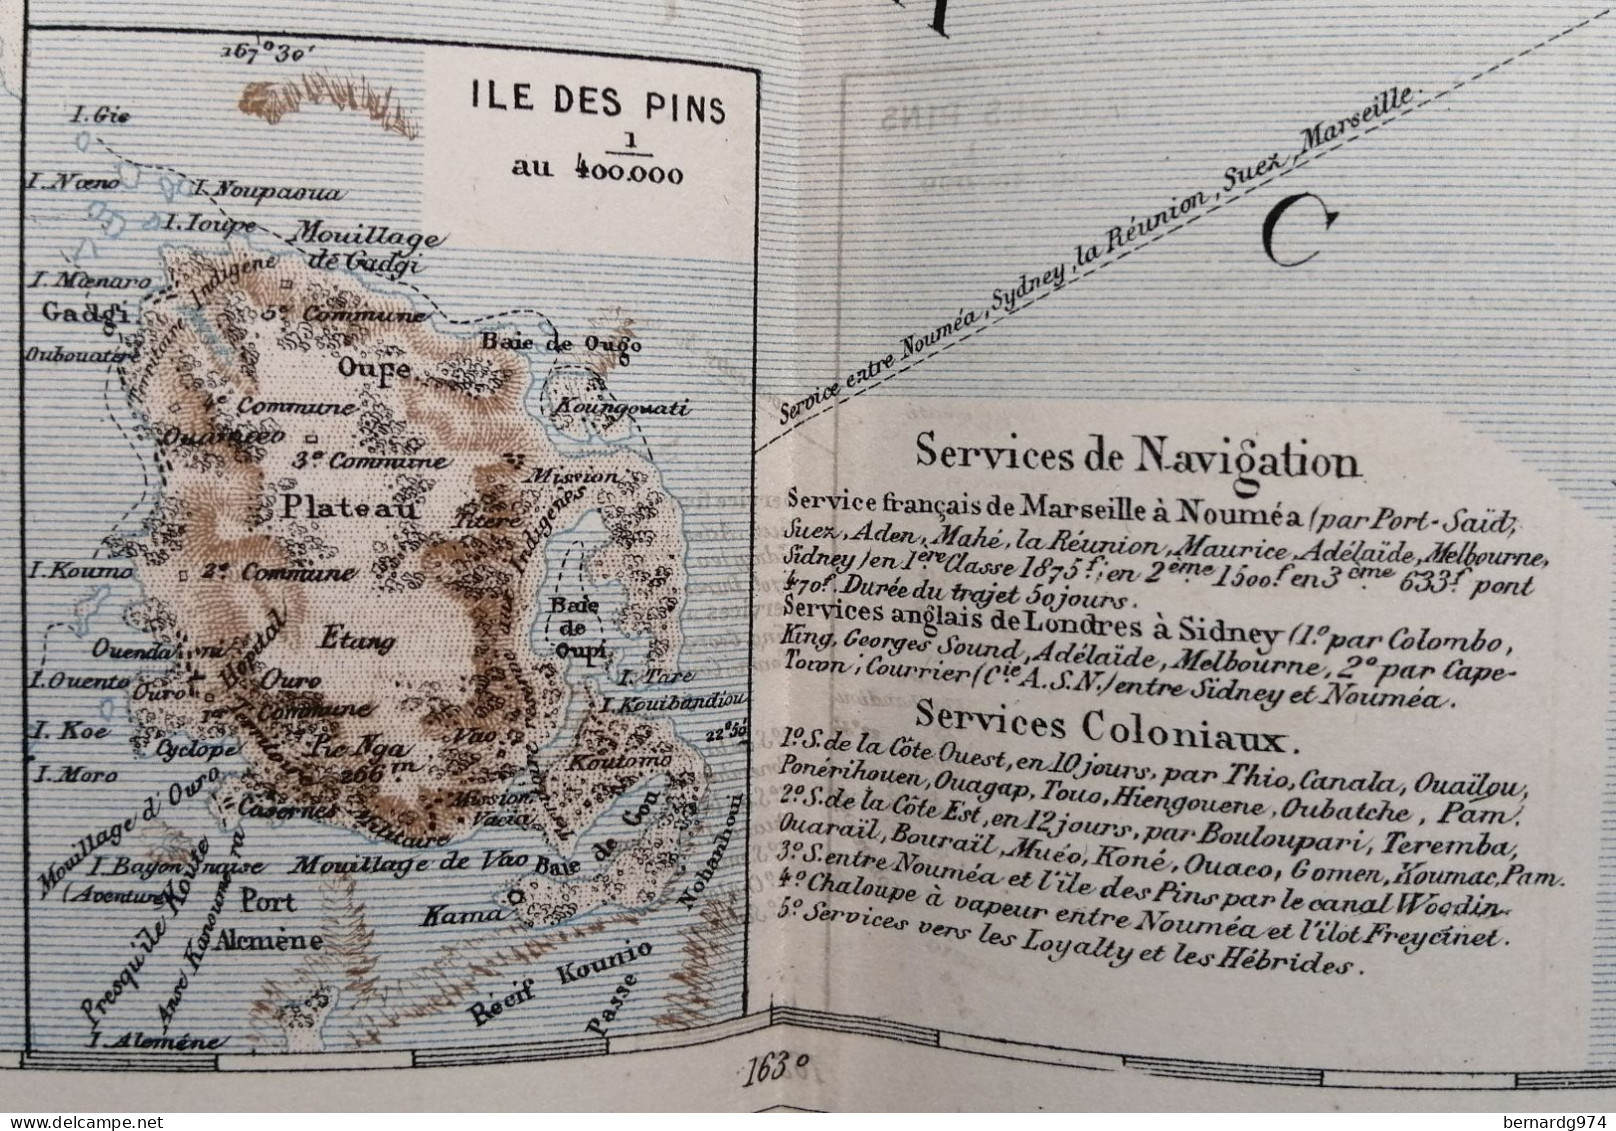 Nouvelle-Calédonie :  grande carte par Abel Pilon et  dossier pédagogique avec carte (1890)